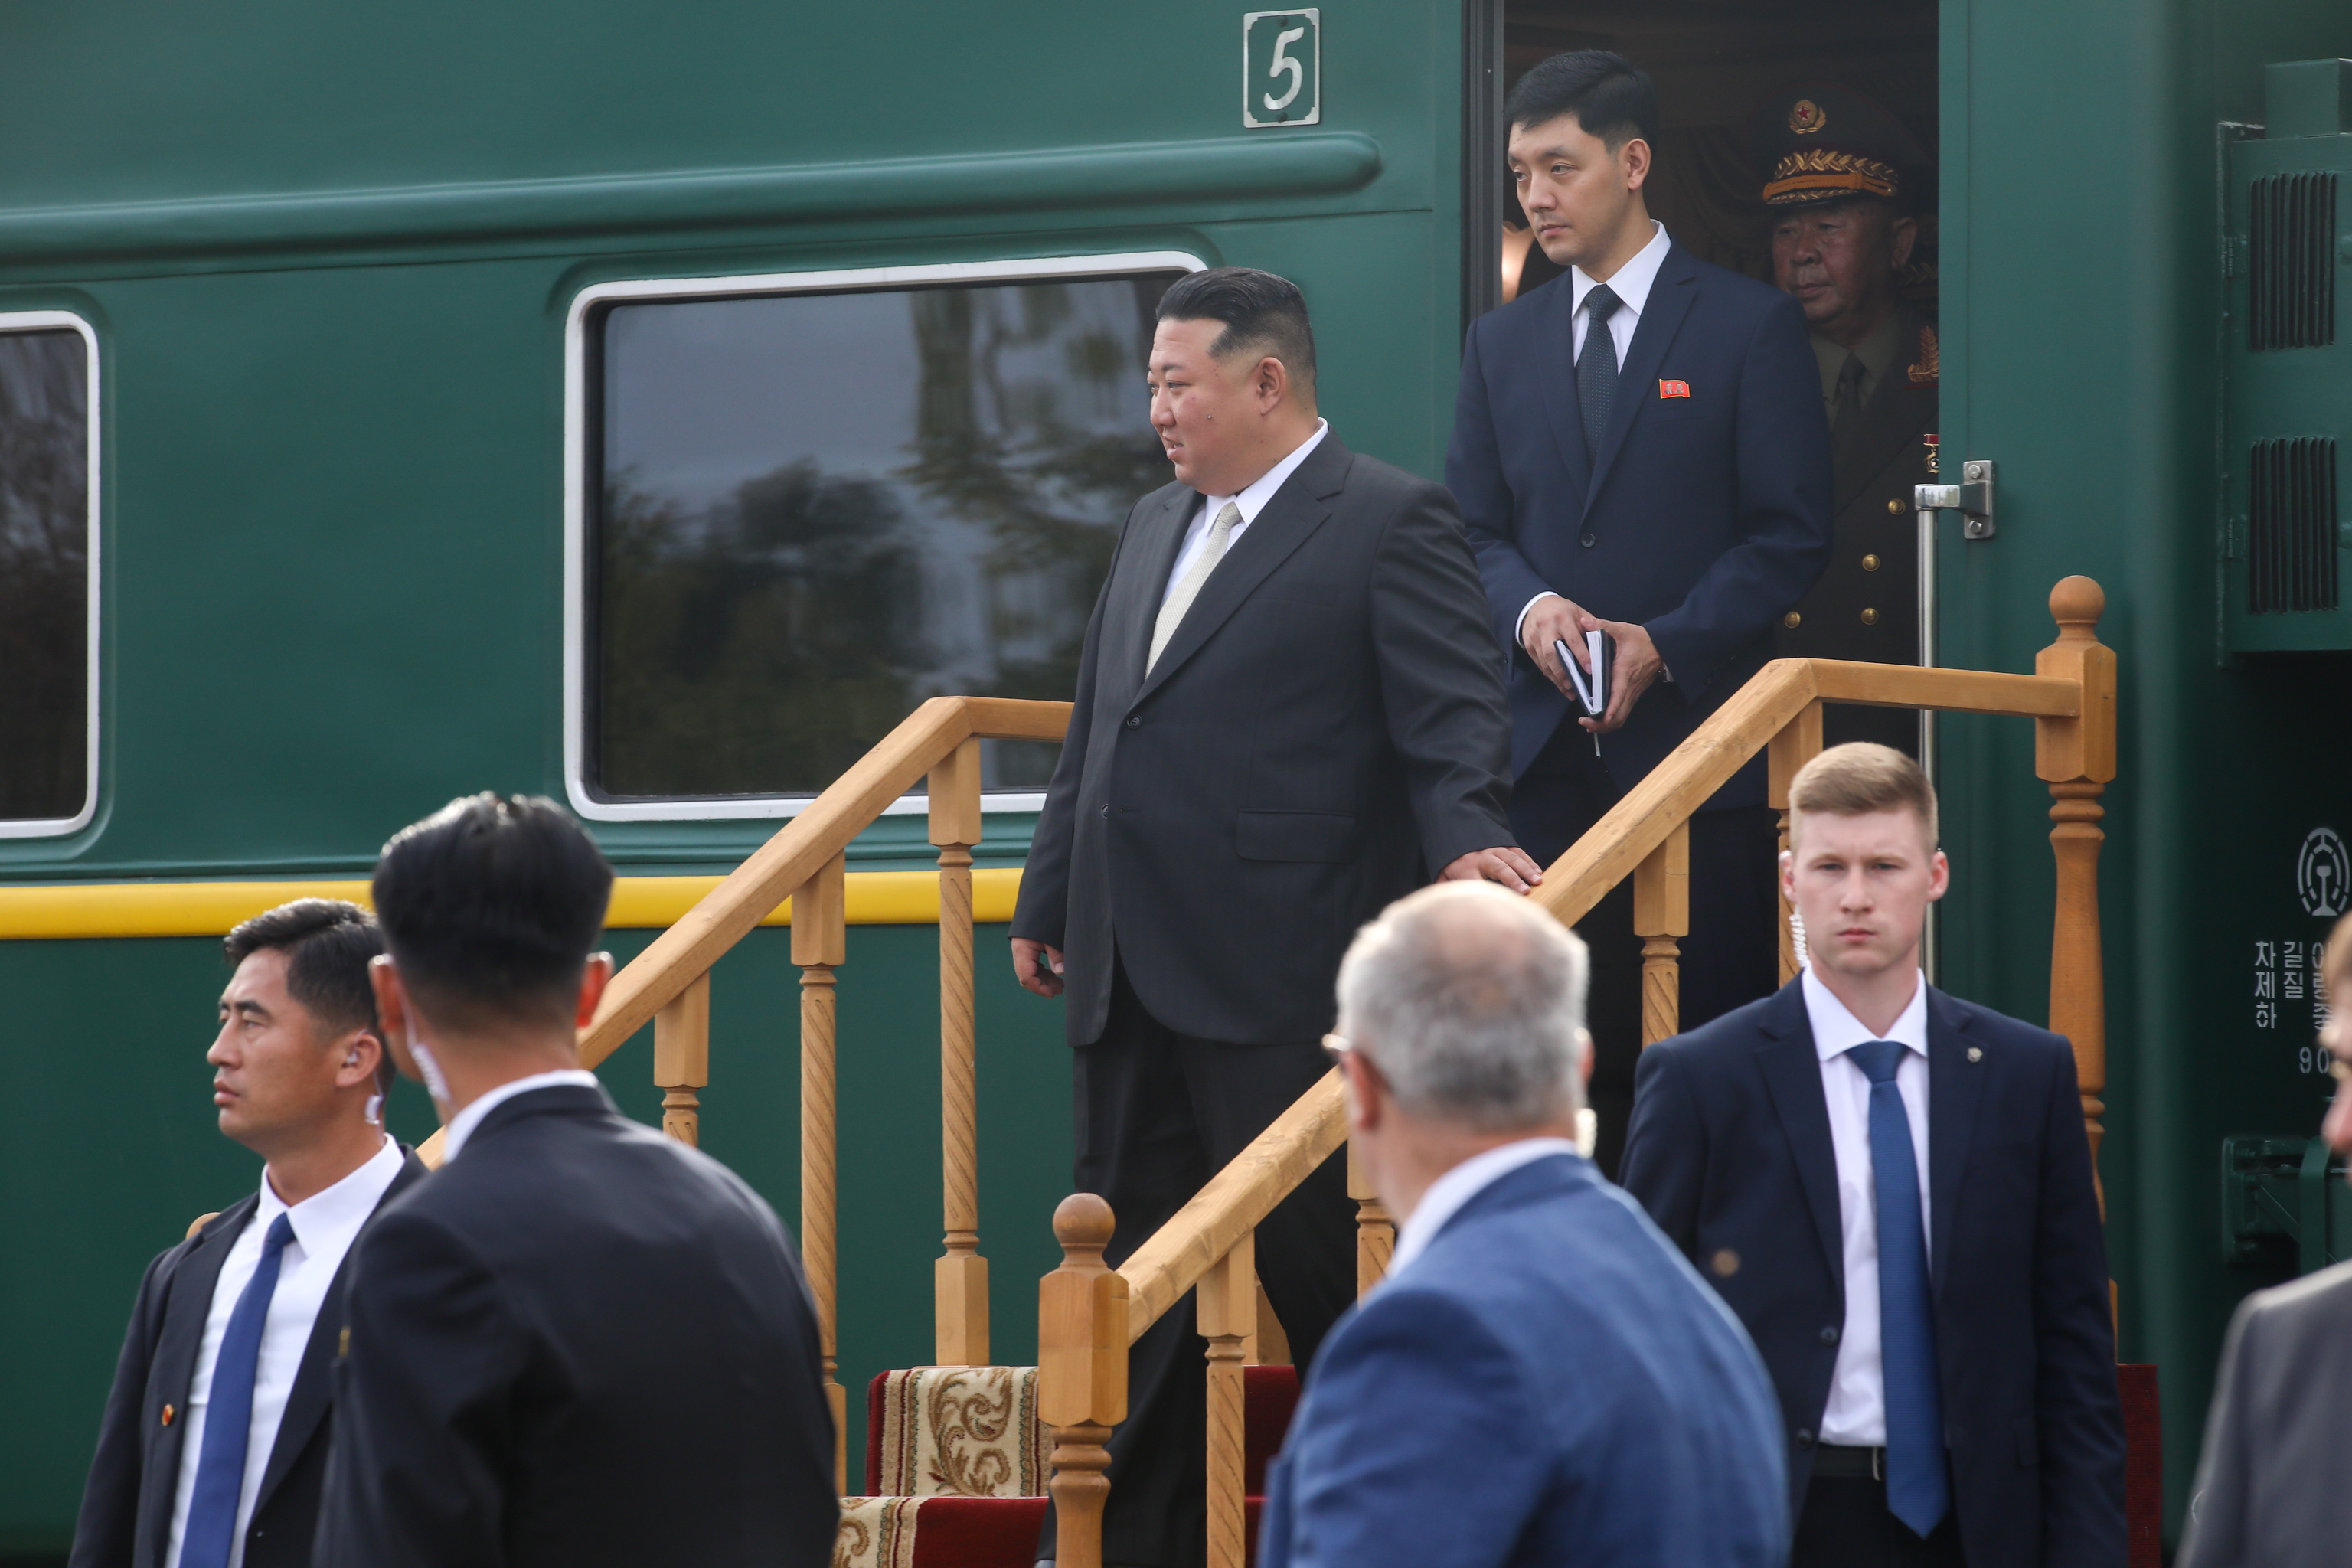 El líder de Corea del Norte, Kim Jong Un, llega a una estación de tren en la ciudad de Artyom.